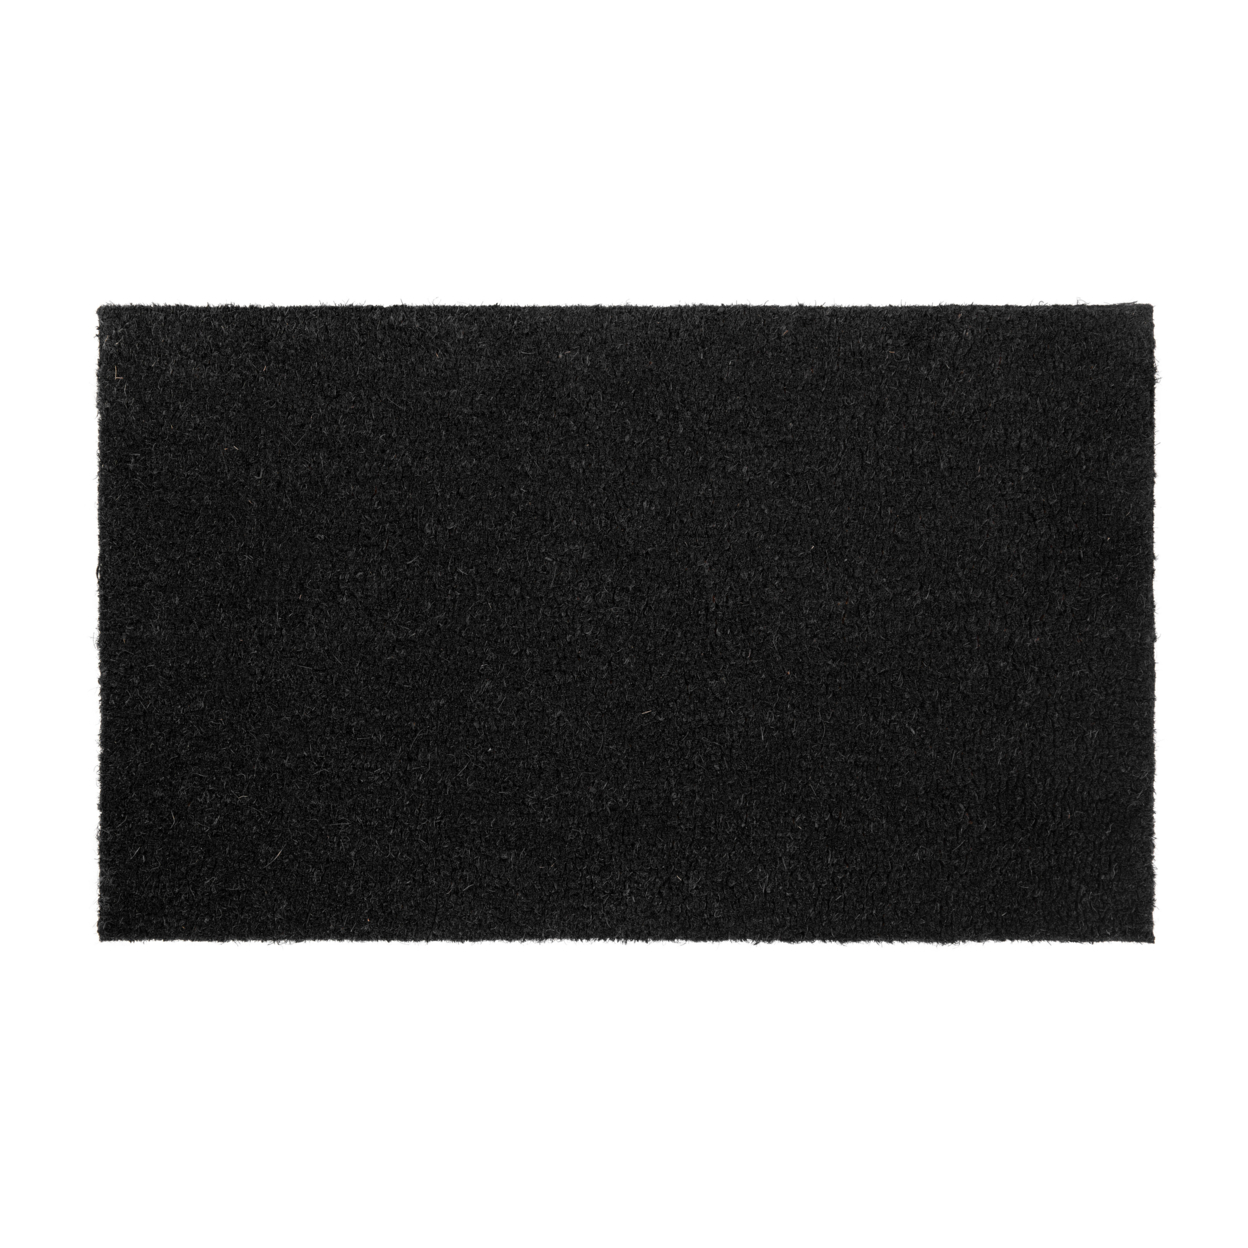 18x30 Black Coir Doormat